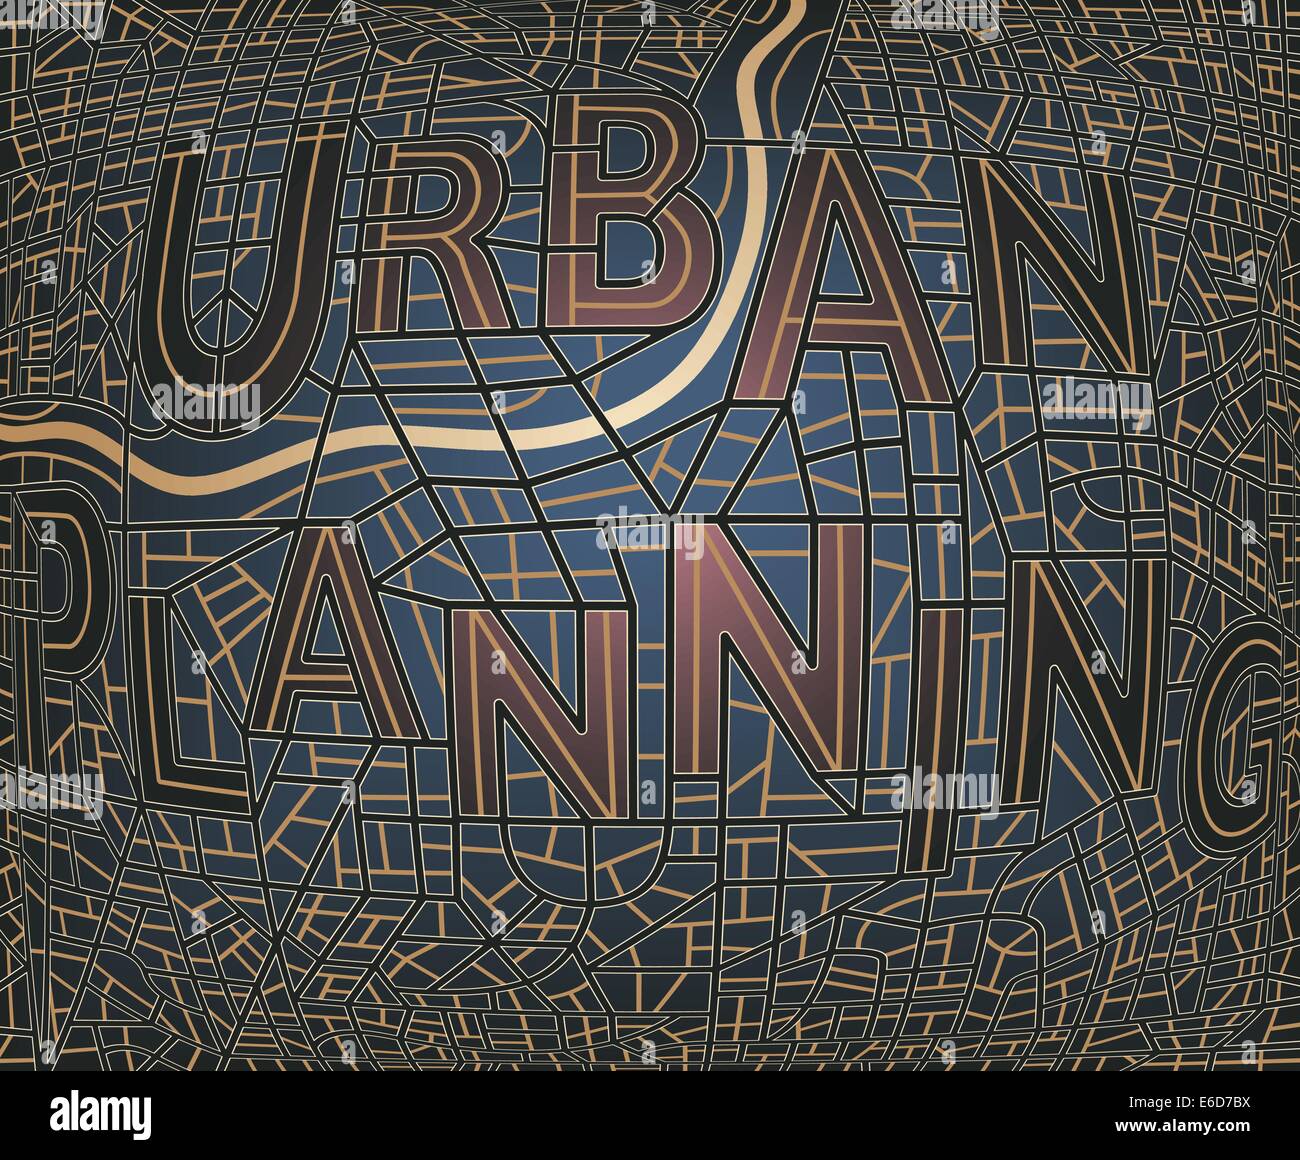 Bearbeitbare Vektorkarte einer generischen Stadt mit Straßen, die Rechtschreibung der Wörter "Urban-Plan" Stock Vektor